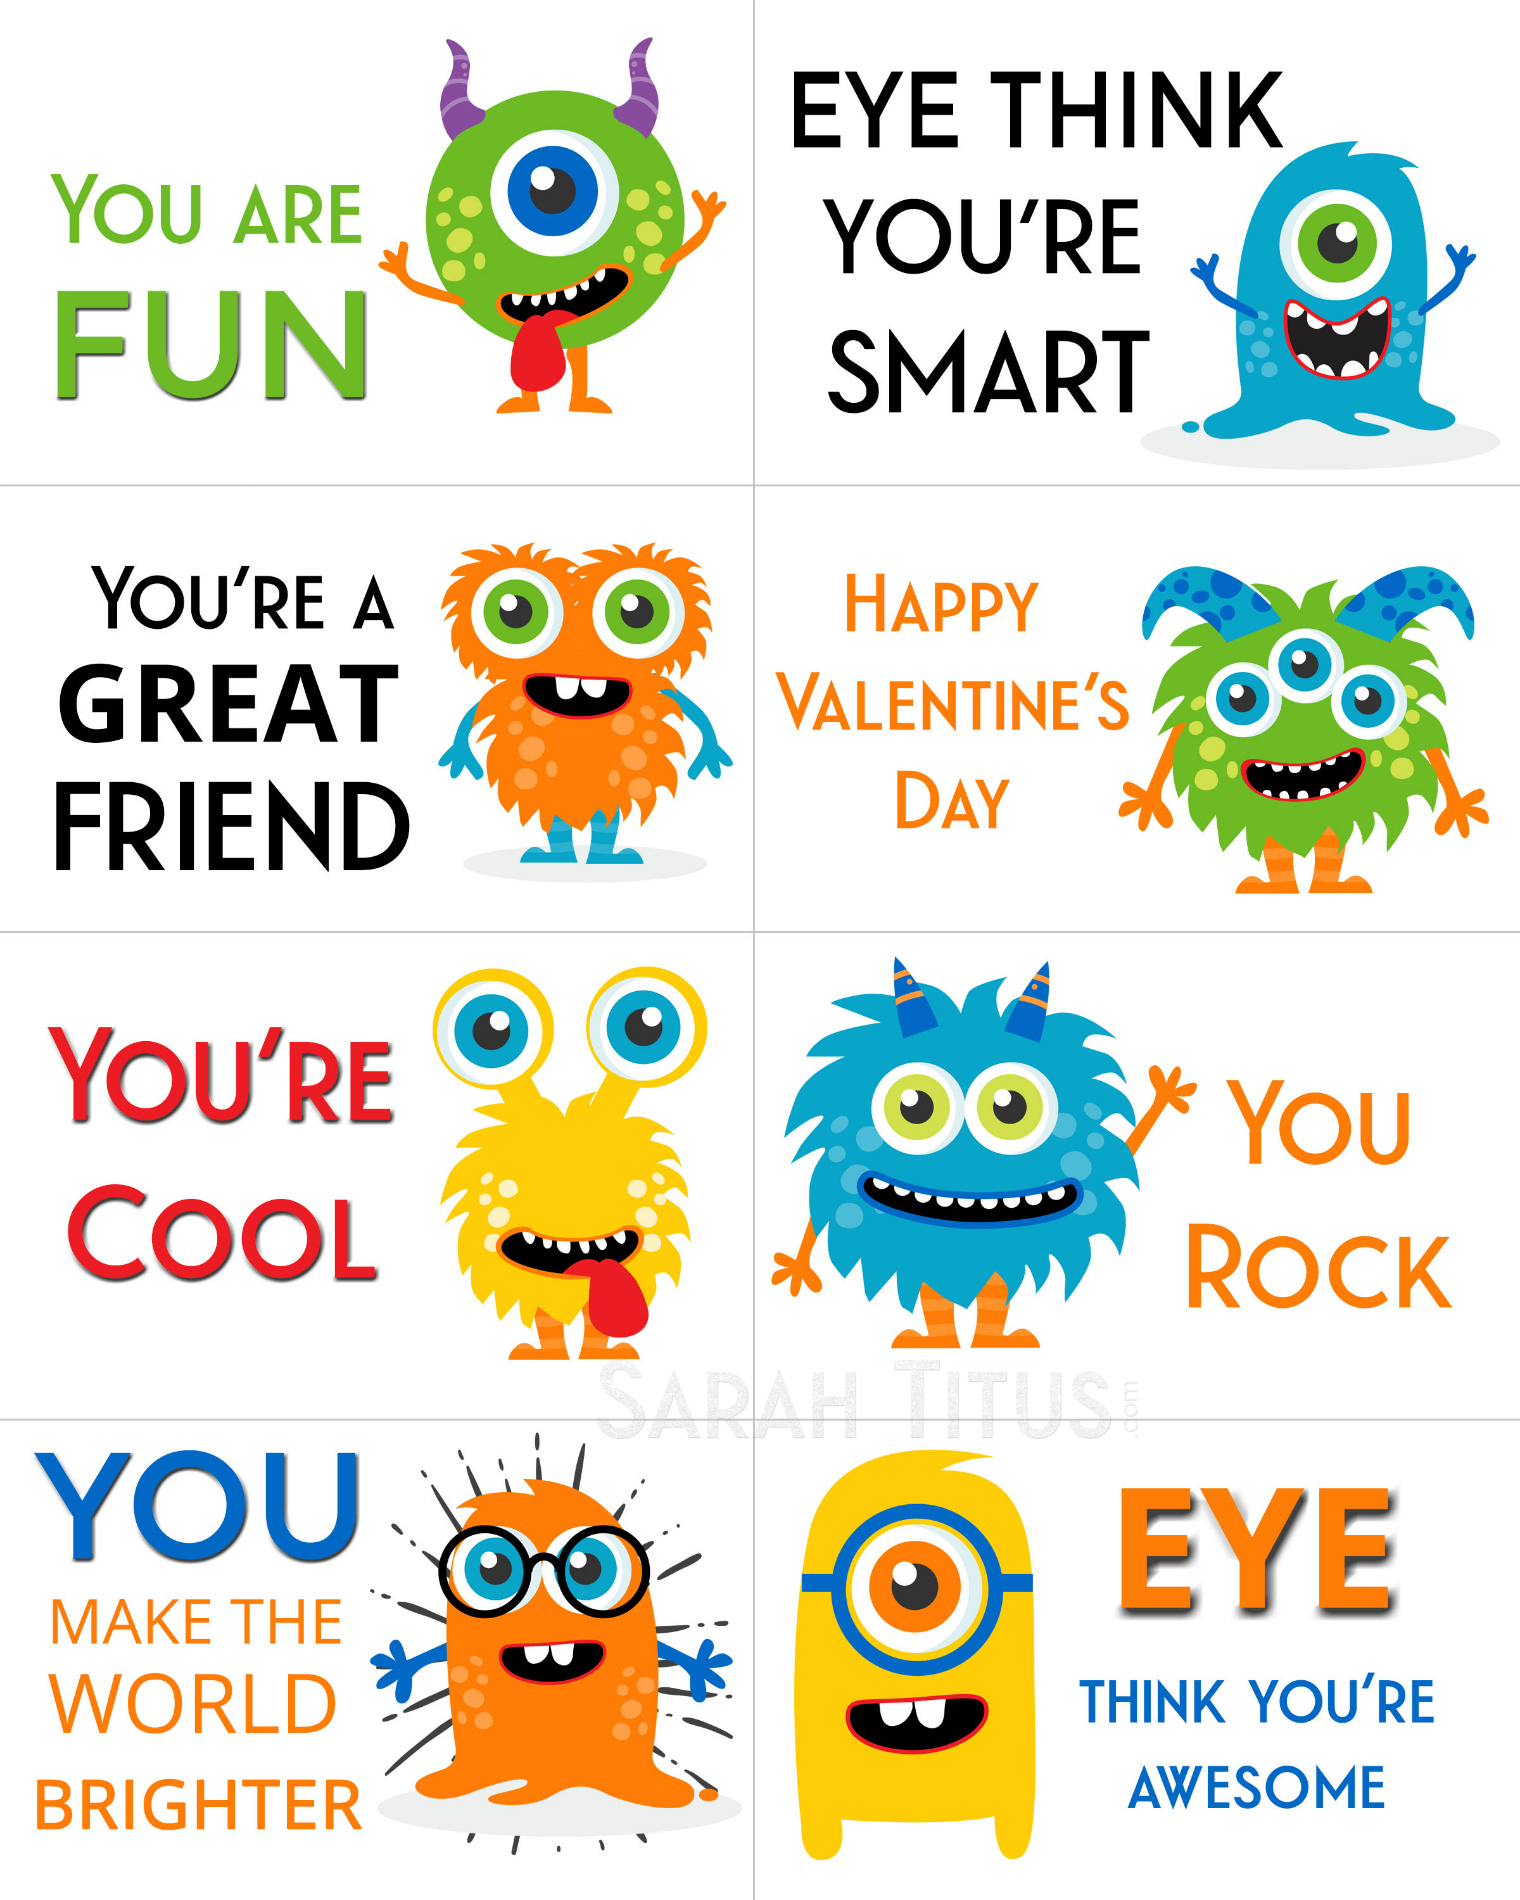 Free Printable Valentine Cards - Sarah Titus - Free Printable Valentine Cards For Kids